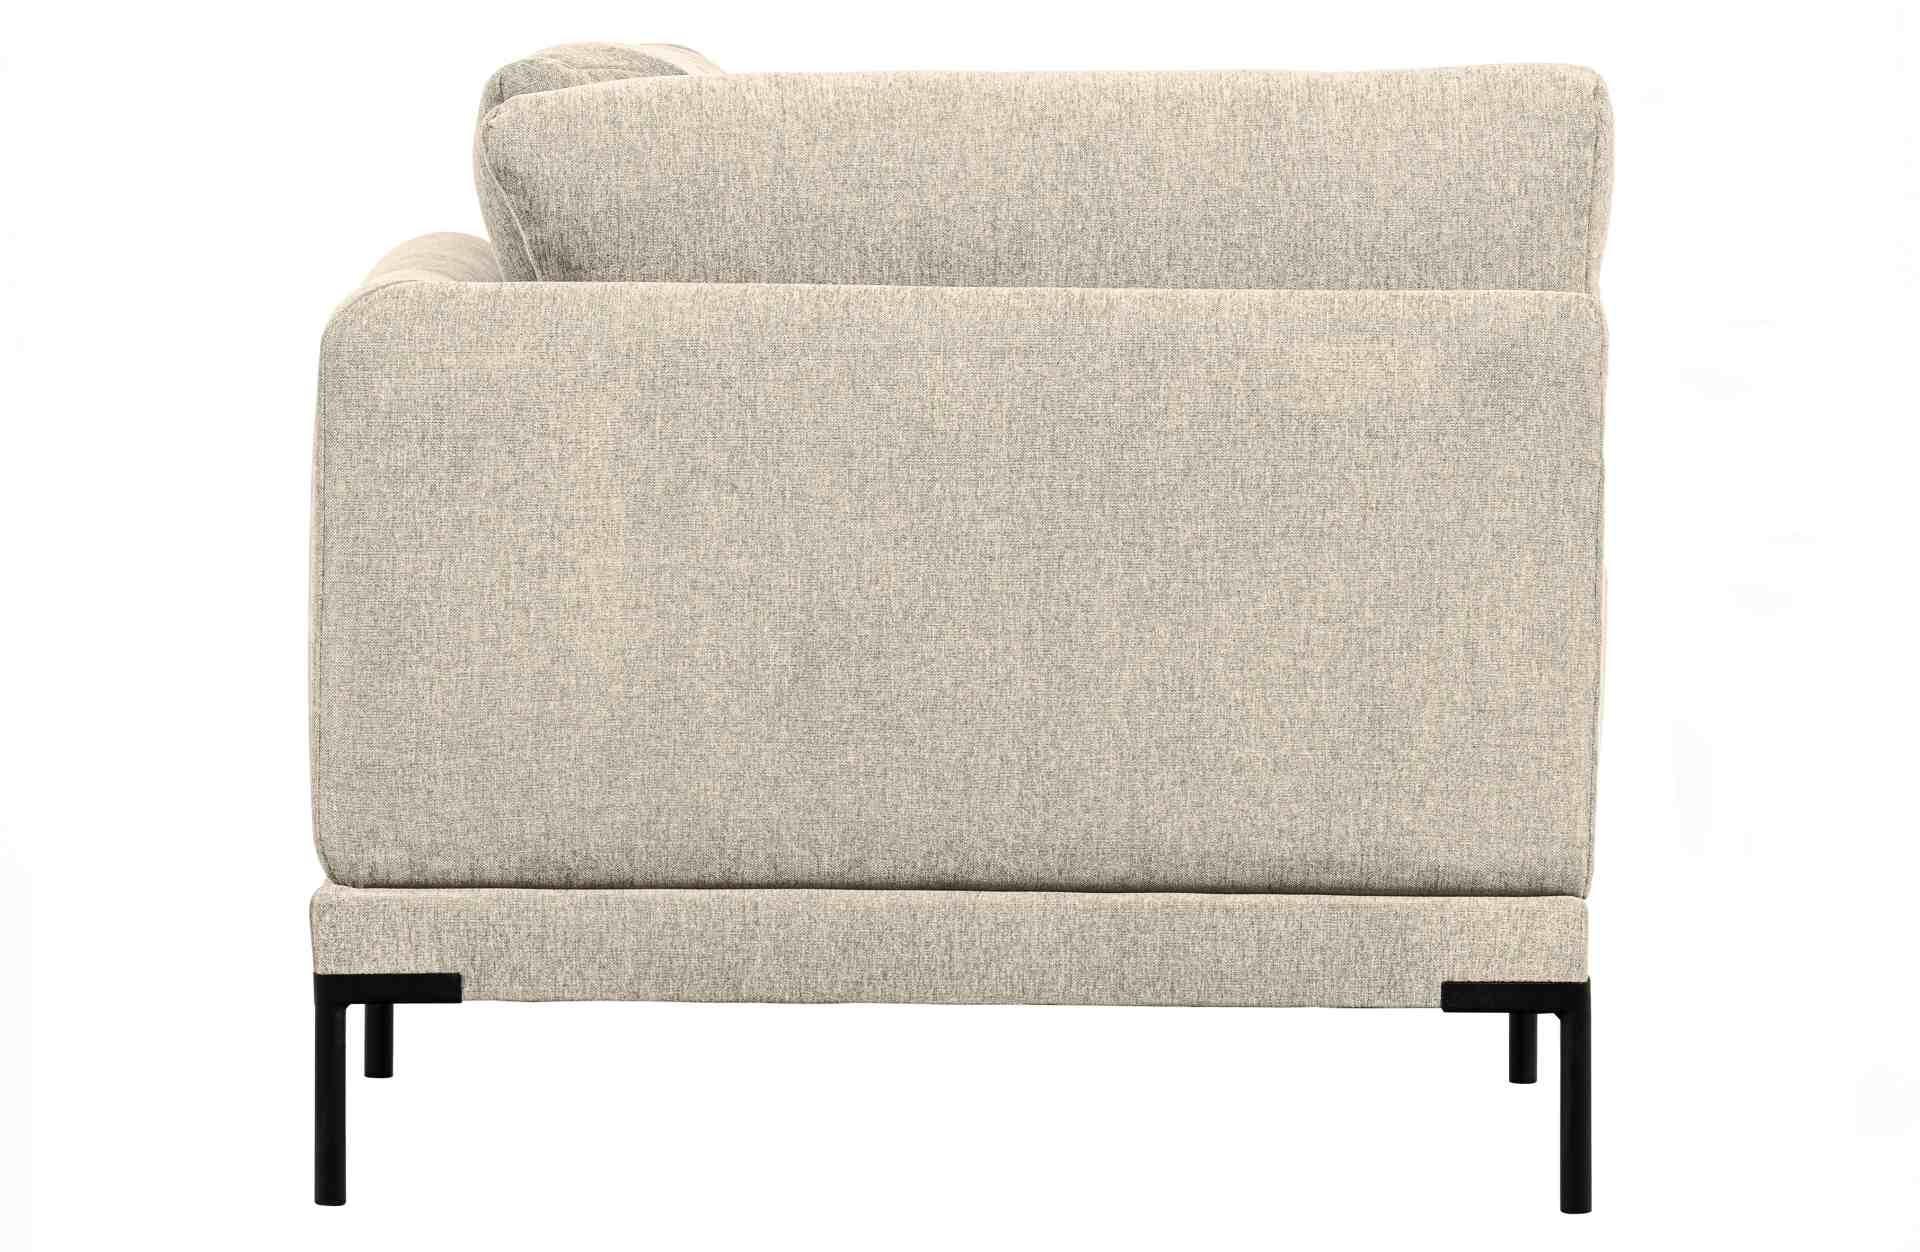 Das Modulsofa Couple Lounge überzeugt mit seinem modernen Design. Das Eck-Element wurde aus Melange Stoff gefertigt, welcher einen einen Sand Farbton besitzen. Das Gestell ist aus Metall und hat eine schwarze Farbe. Das Element hat eine Länge von 100 cm u